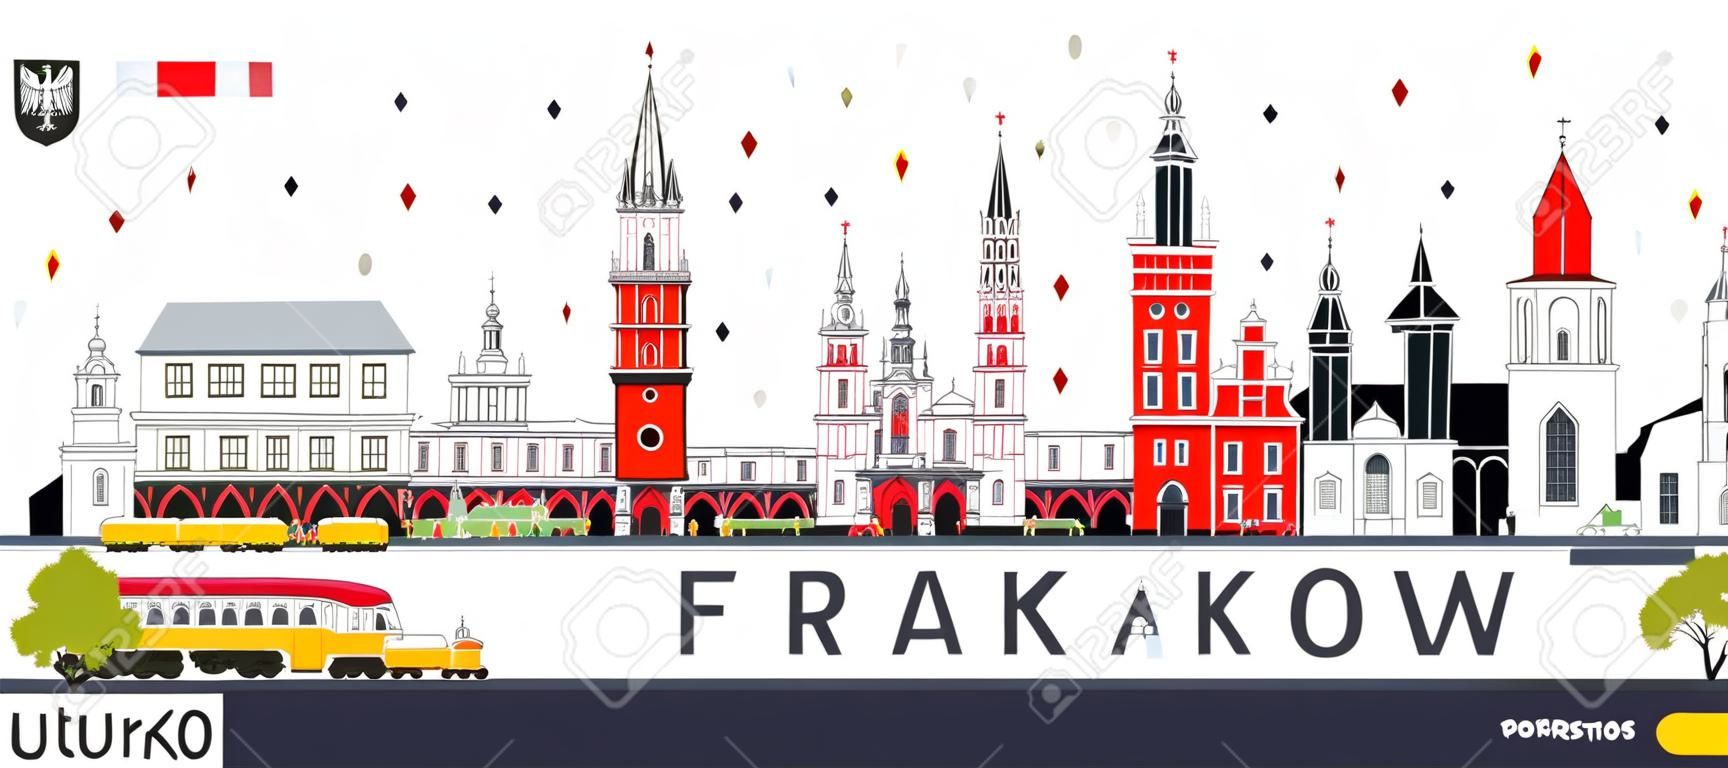 クラクフポーランドシティスカイラインと白に隔離された色の建物。ベクトルイラストレーション。歴史的建築とのビジネス旅行と観光コンセプト。ランドマークのあるクラクフの街並み。